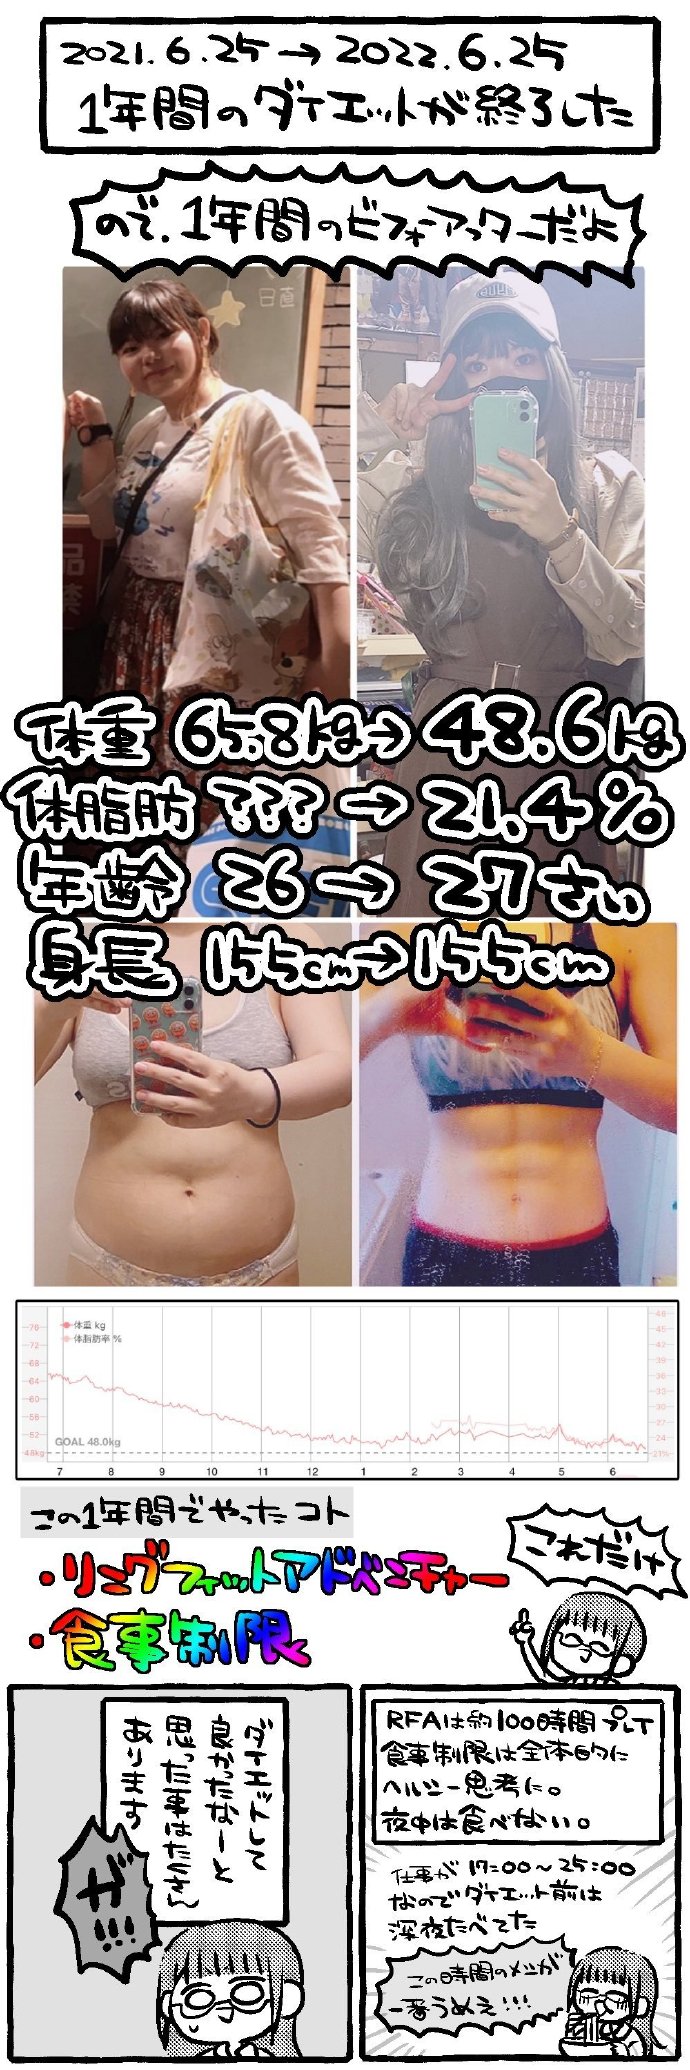 日本女玩家玩一年《健身环大冒险》+控制饮食减34斤